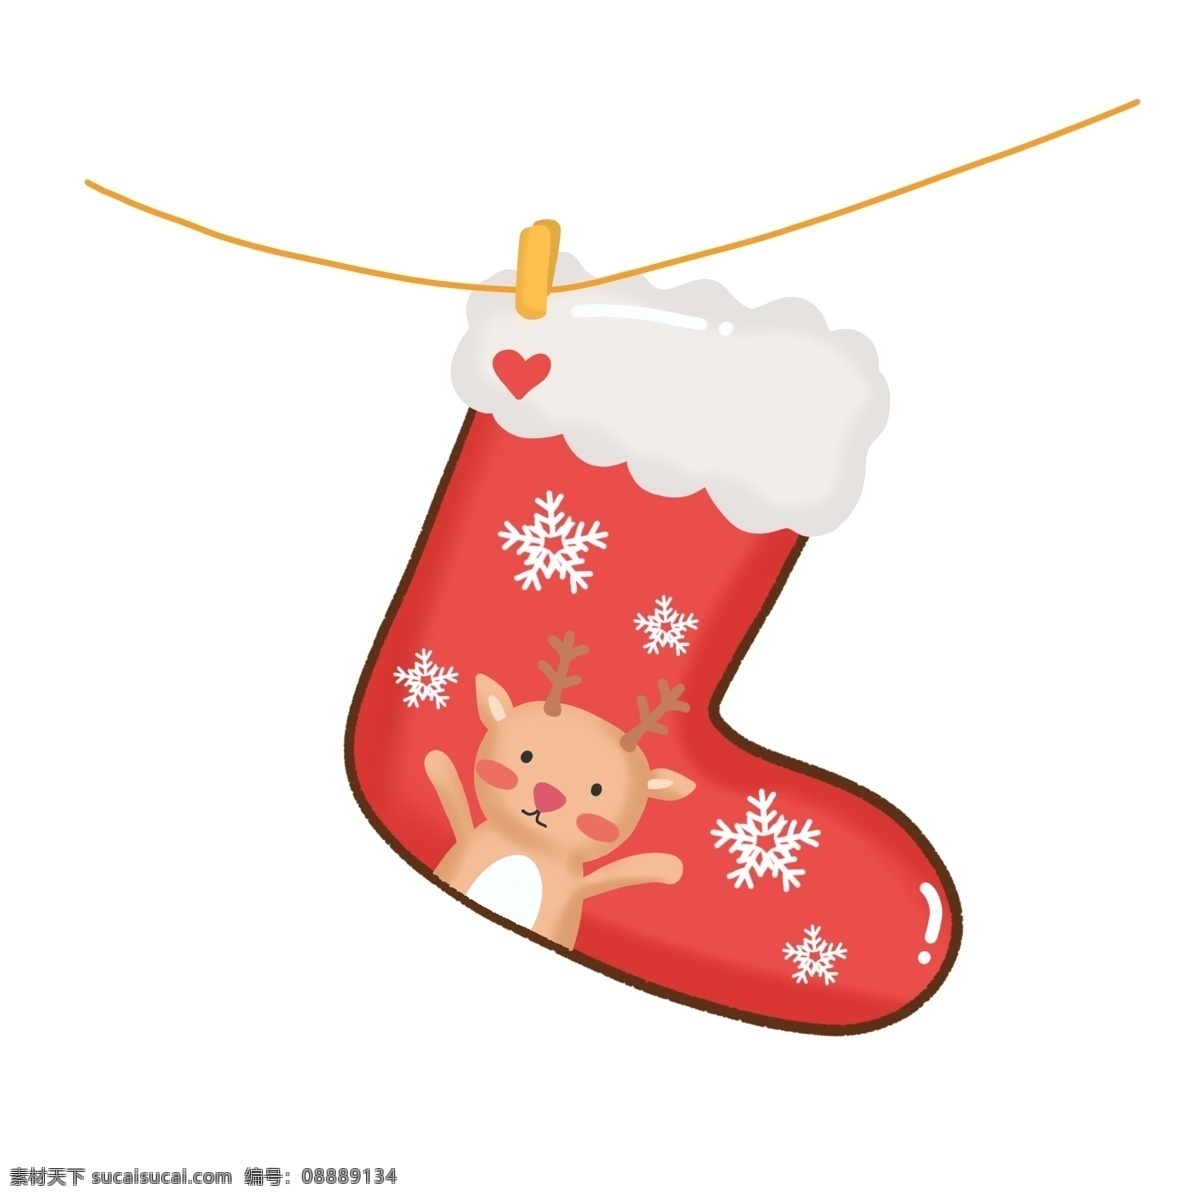 手绘 圣诞节 装饰 可爱 圣诞 袜 元素 袜子 麋鹿 圣诞装饰 雪花 圣诞袜 圣诞节袜子 可爱袜子 圣诞鹿 小鹿 可爱圣诞鹿 铃铛 饼干小人 圣诞节装饰 漂浮雪花